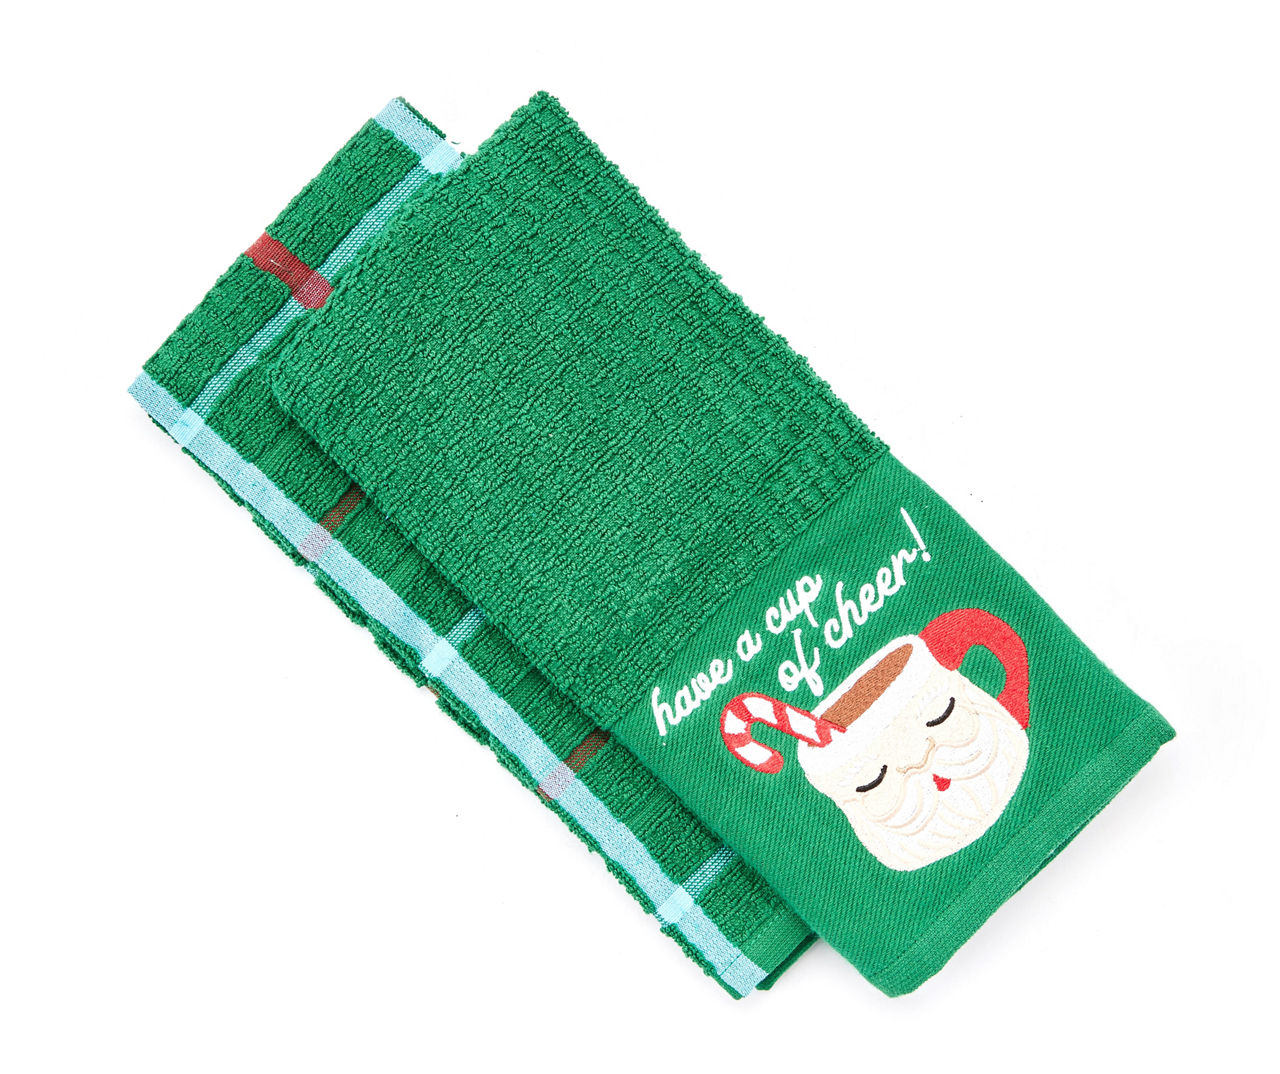 Winter Wonder Lane Santa's Workshop Cup of Cheer Green Embroidered  2-Piece Kitchen Towel Set